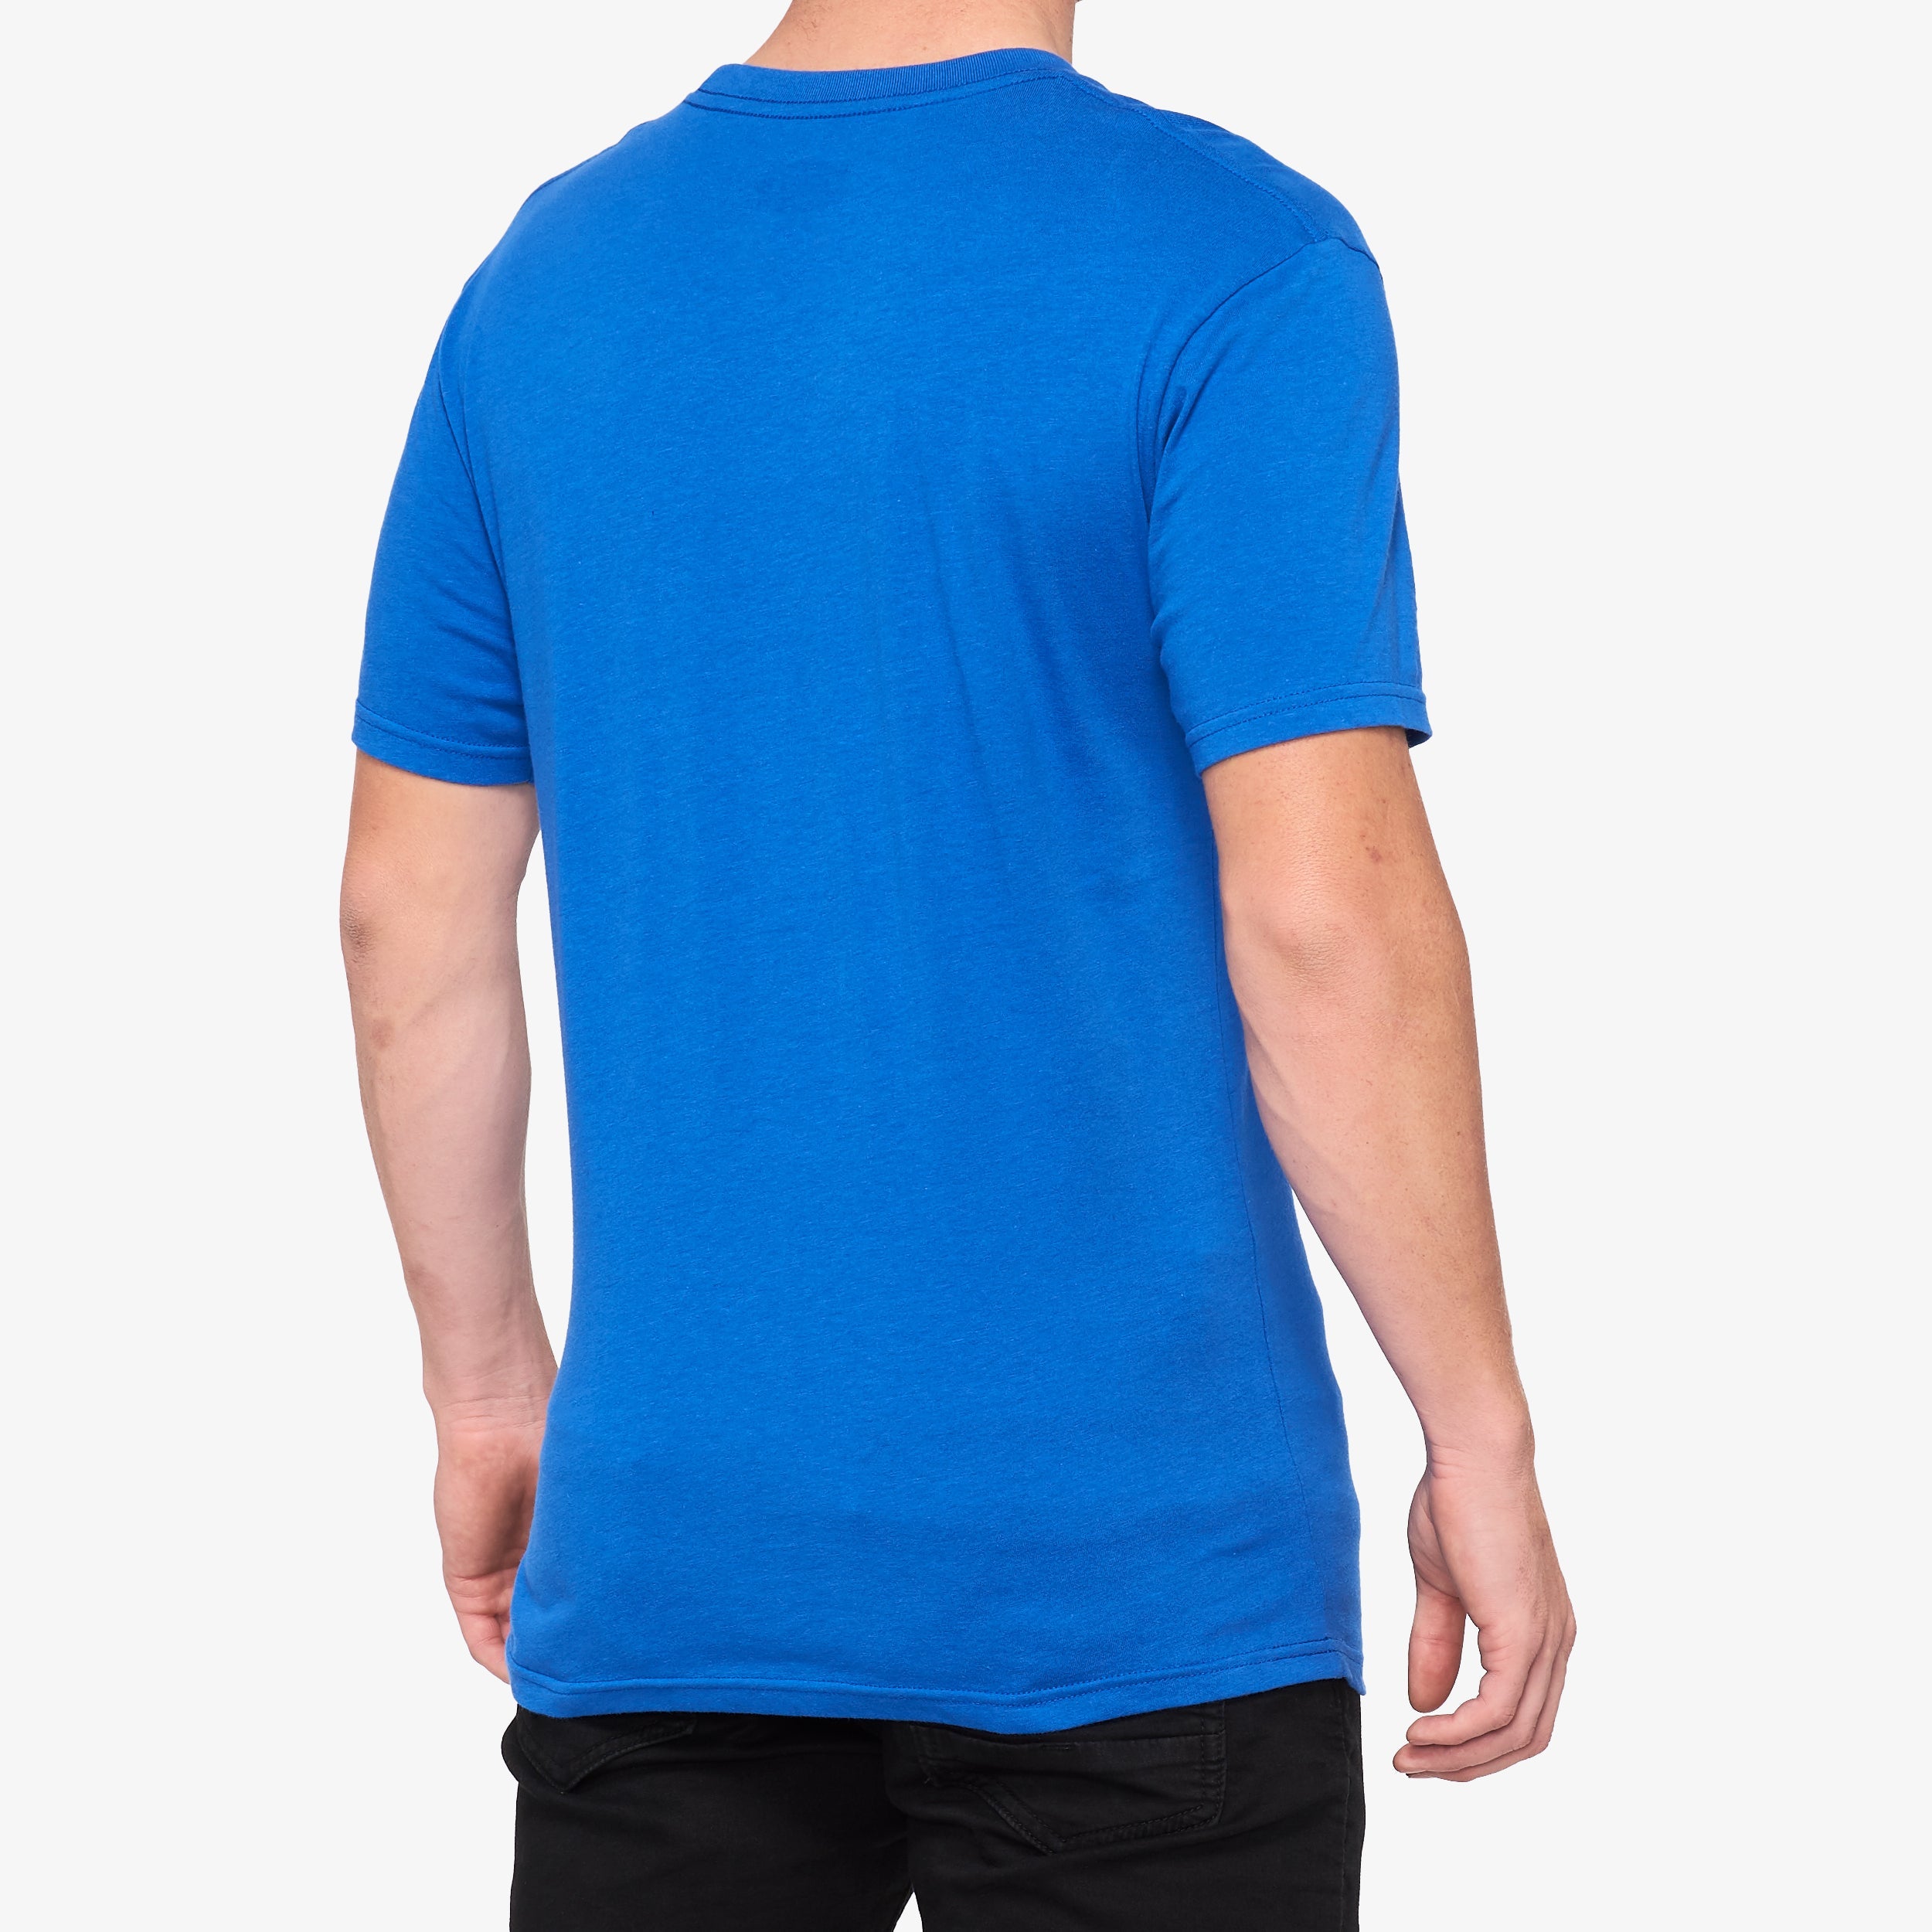 VULN T-shirt Royal Blue - Secondary